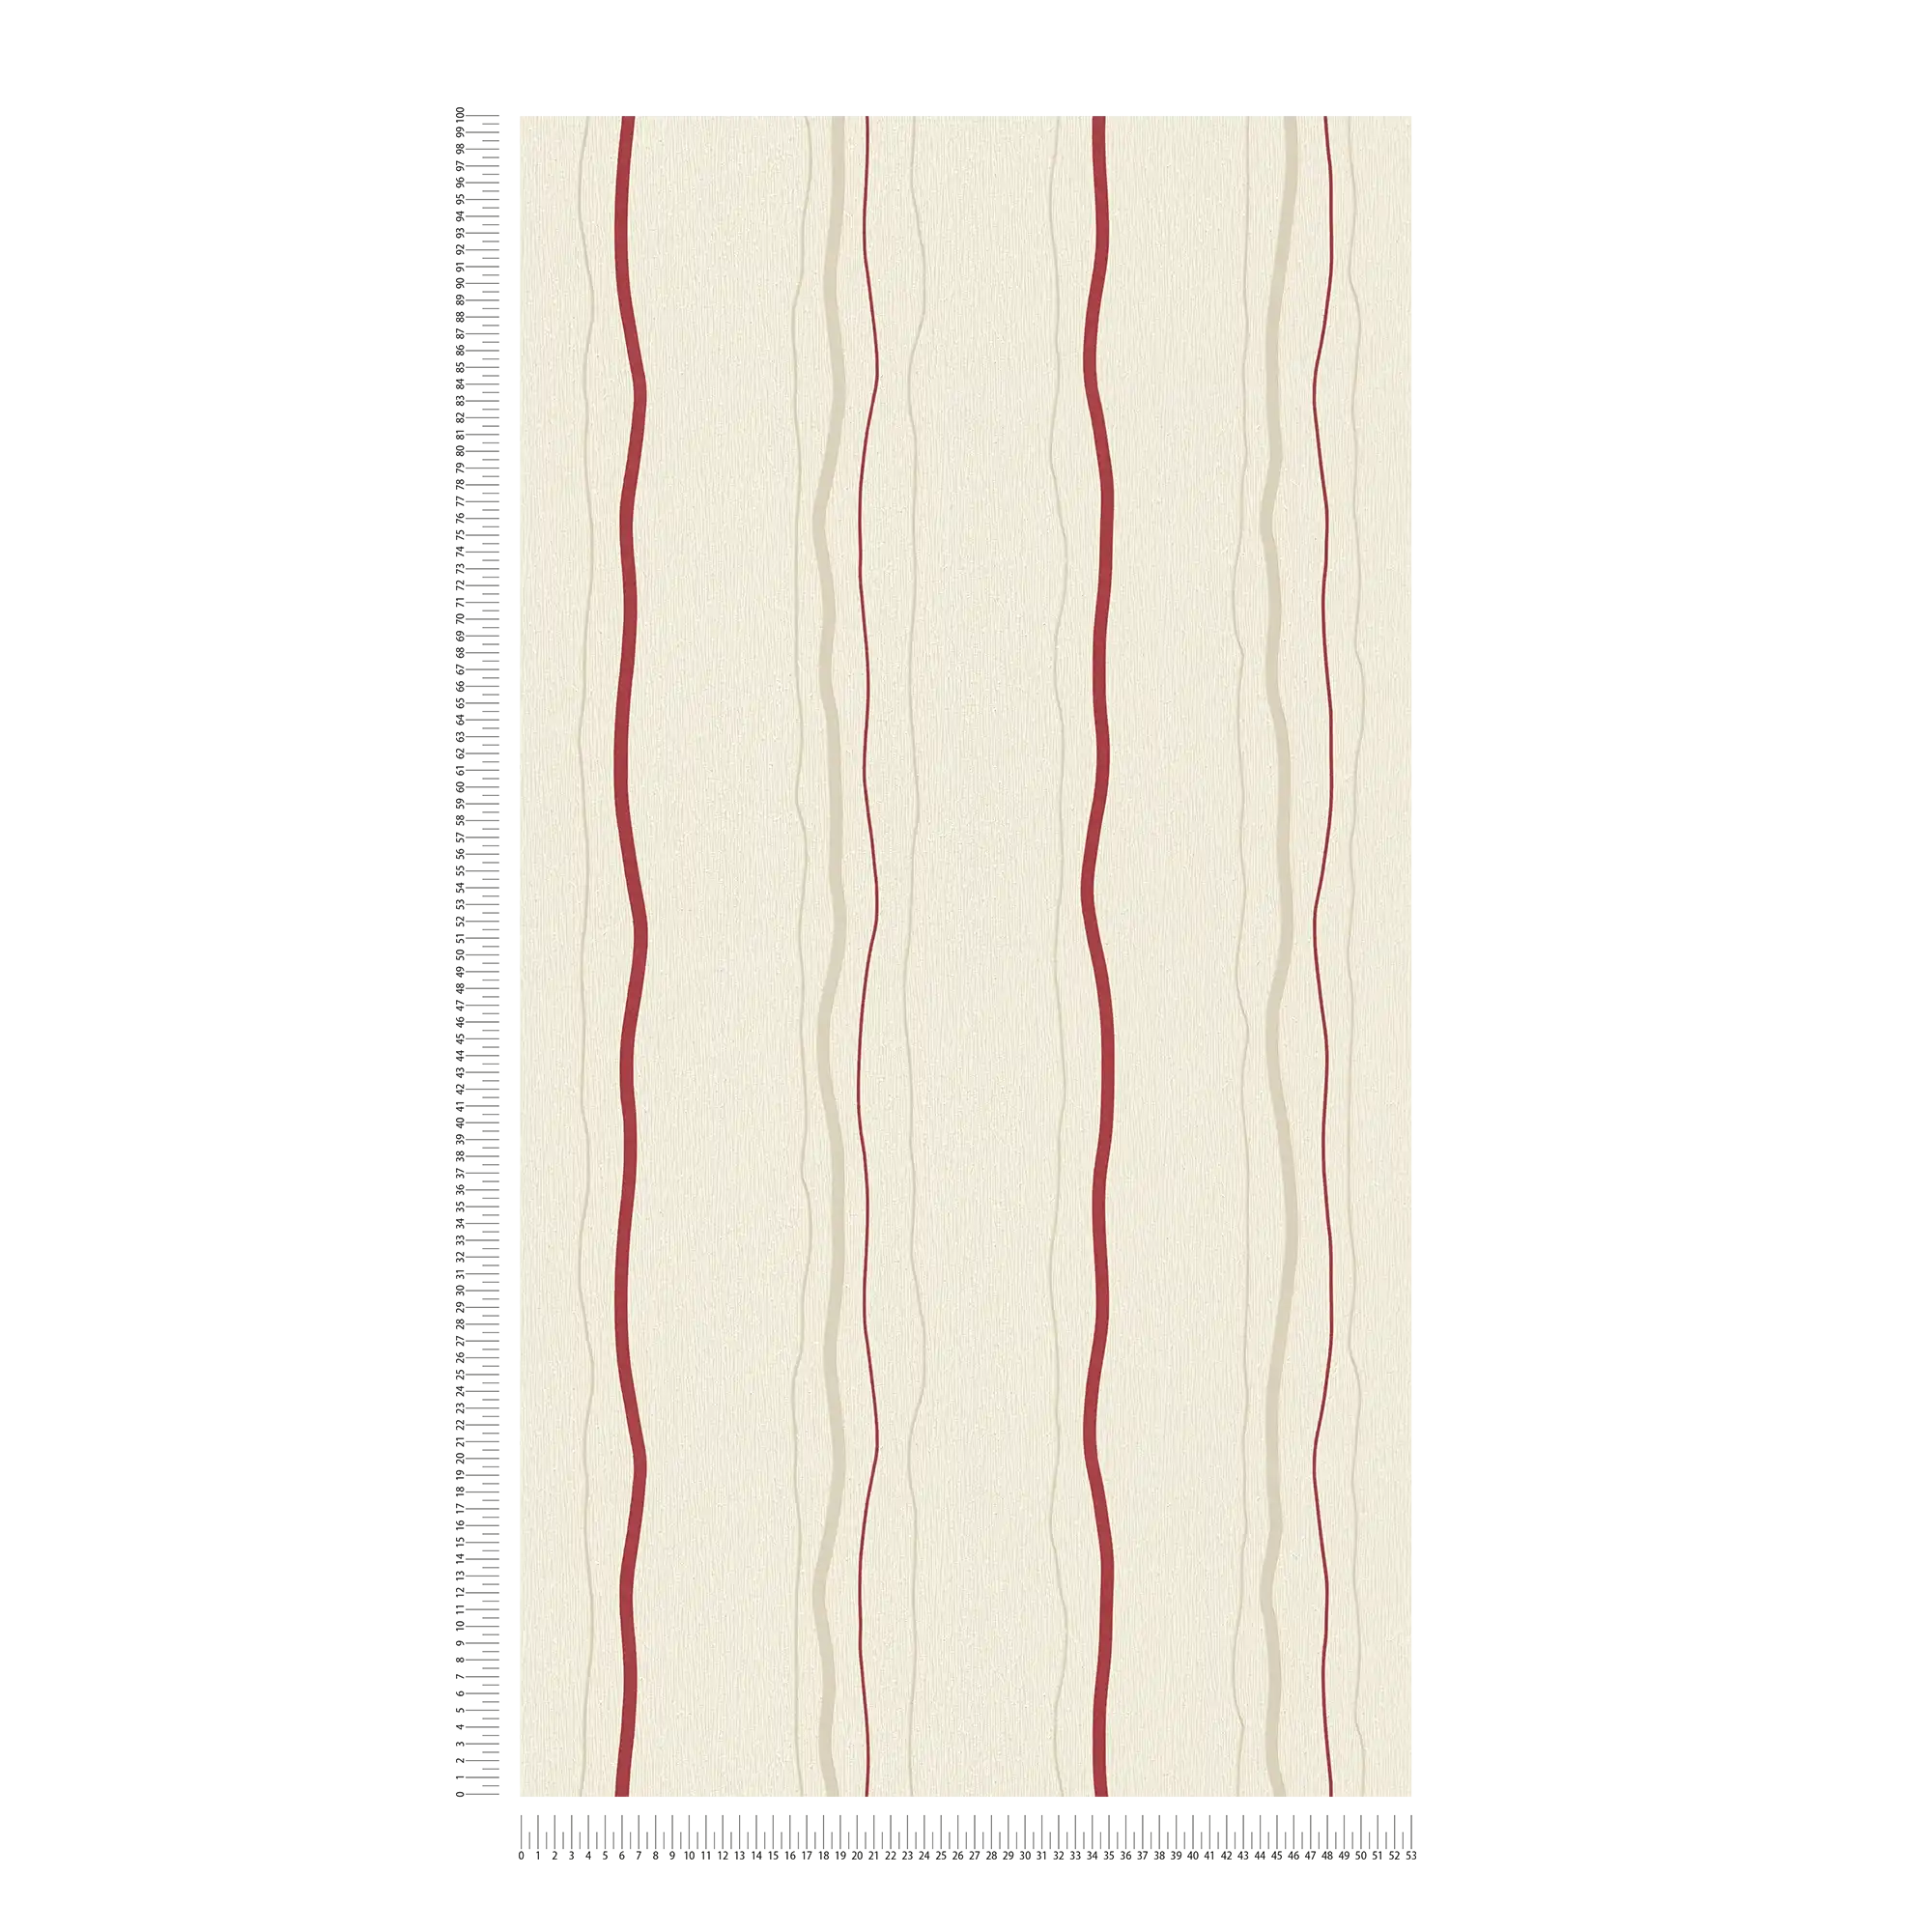             Behang met lijnenspel verticale strepen - crème, rood, beige
        